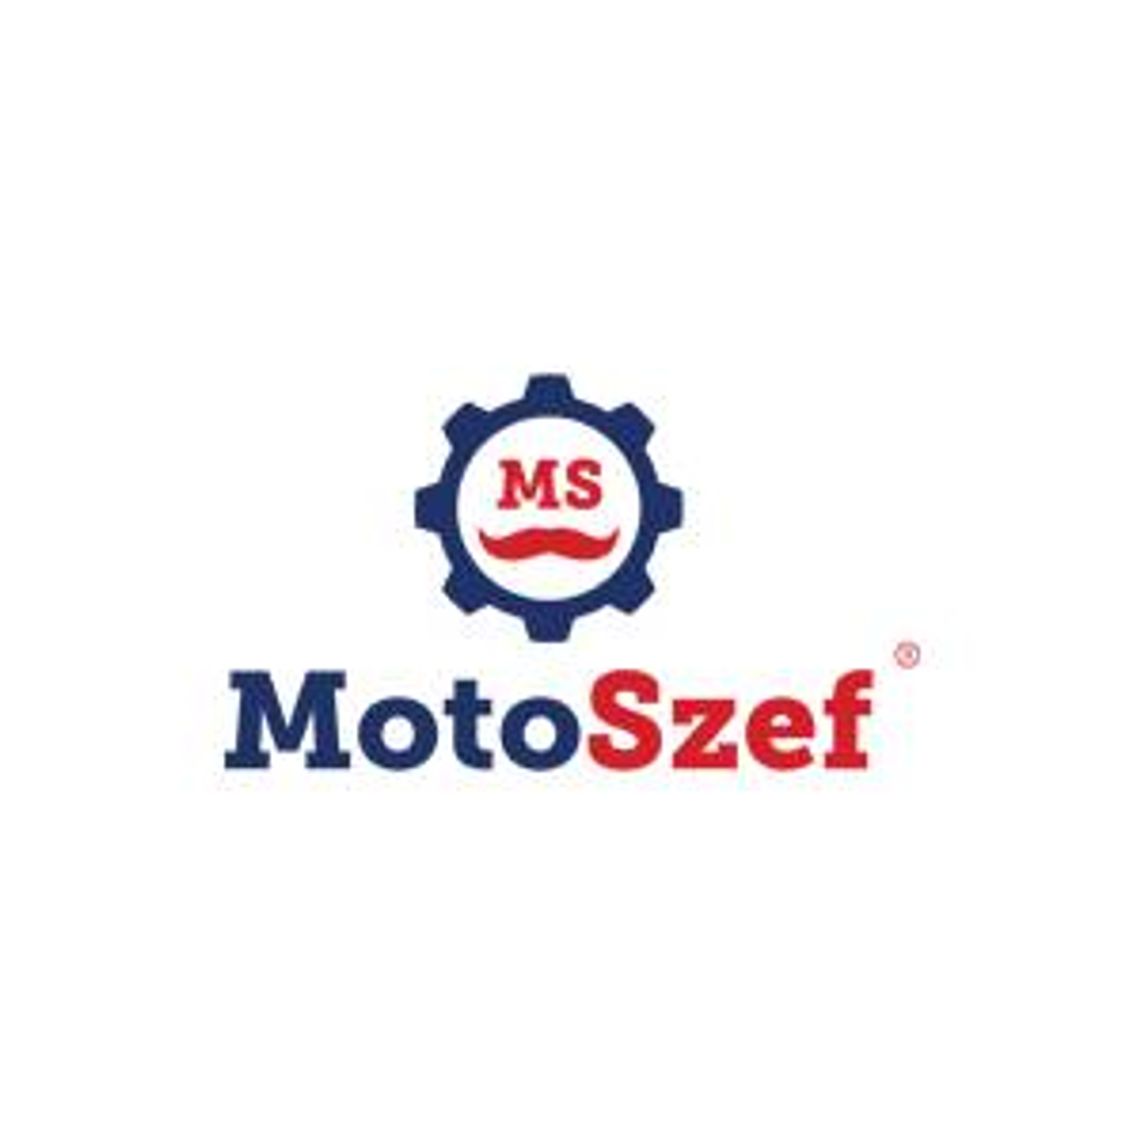 Internetowy sklep motoryzacyjny - MotoSzef